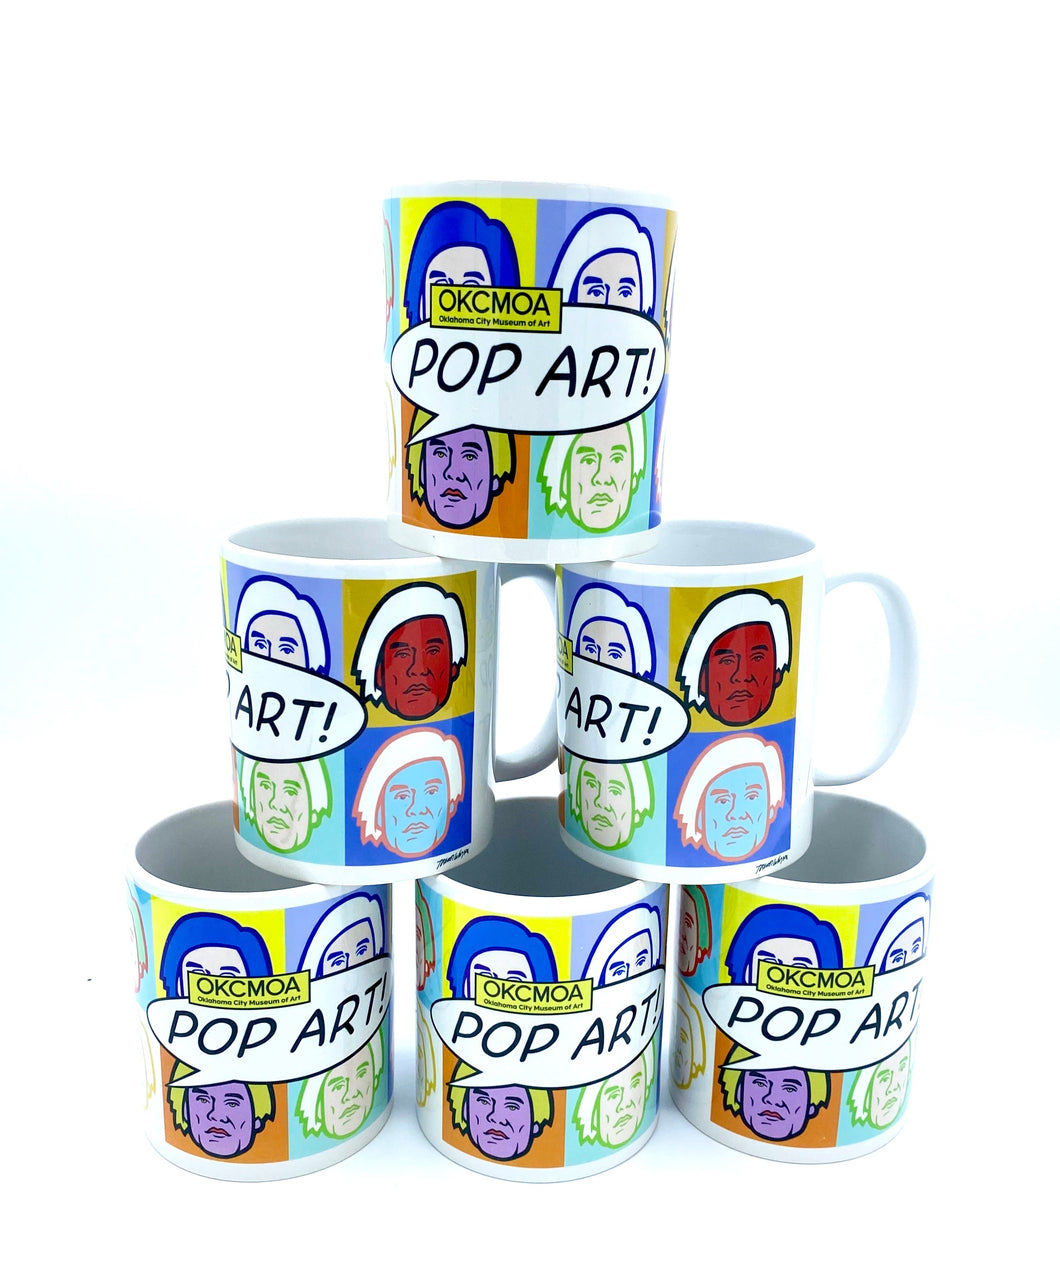 OKCMOA Pop Art! Warhol Mug